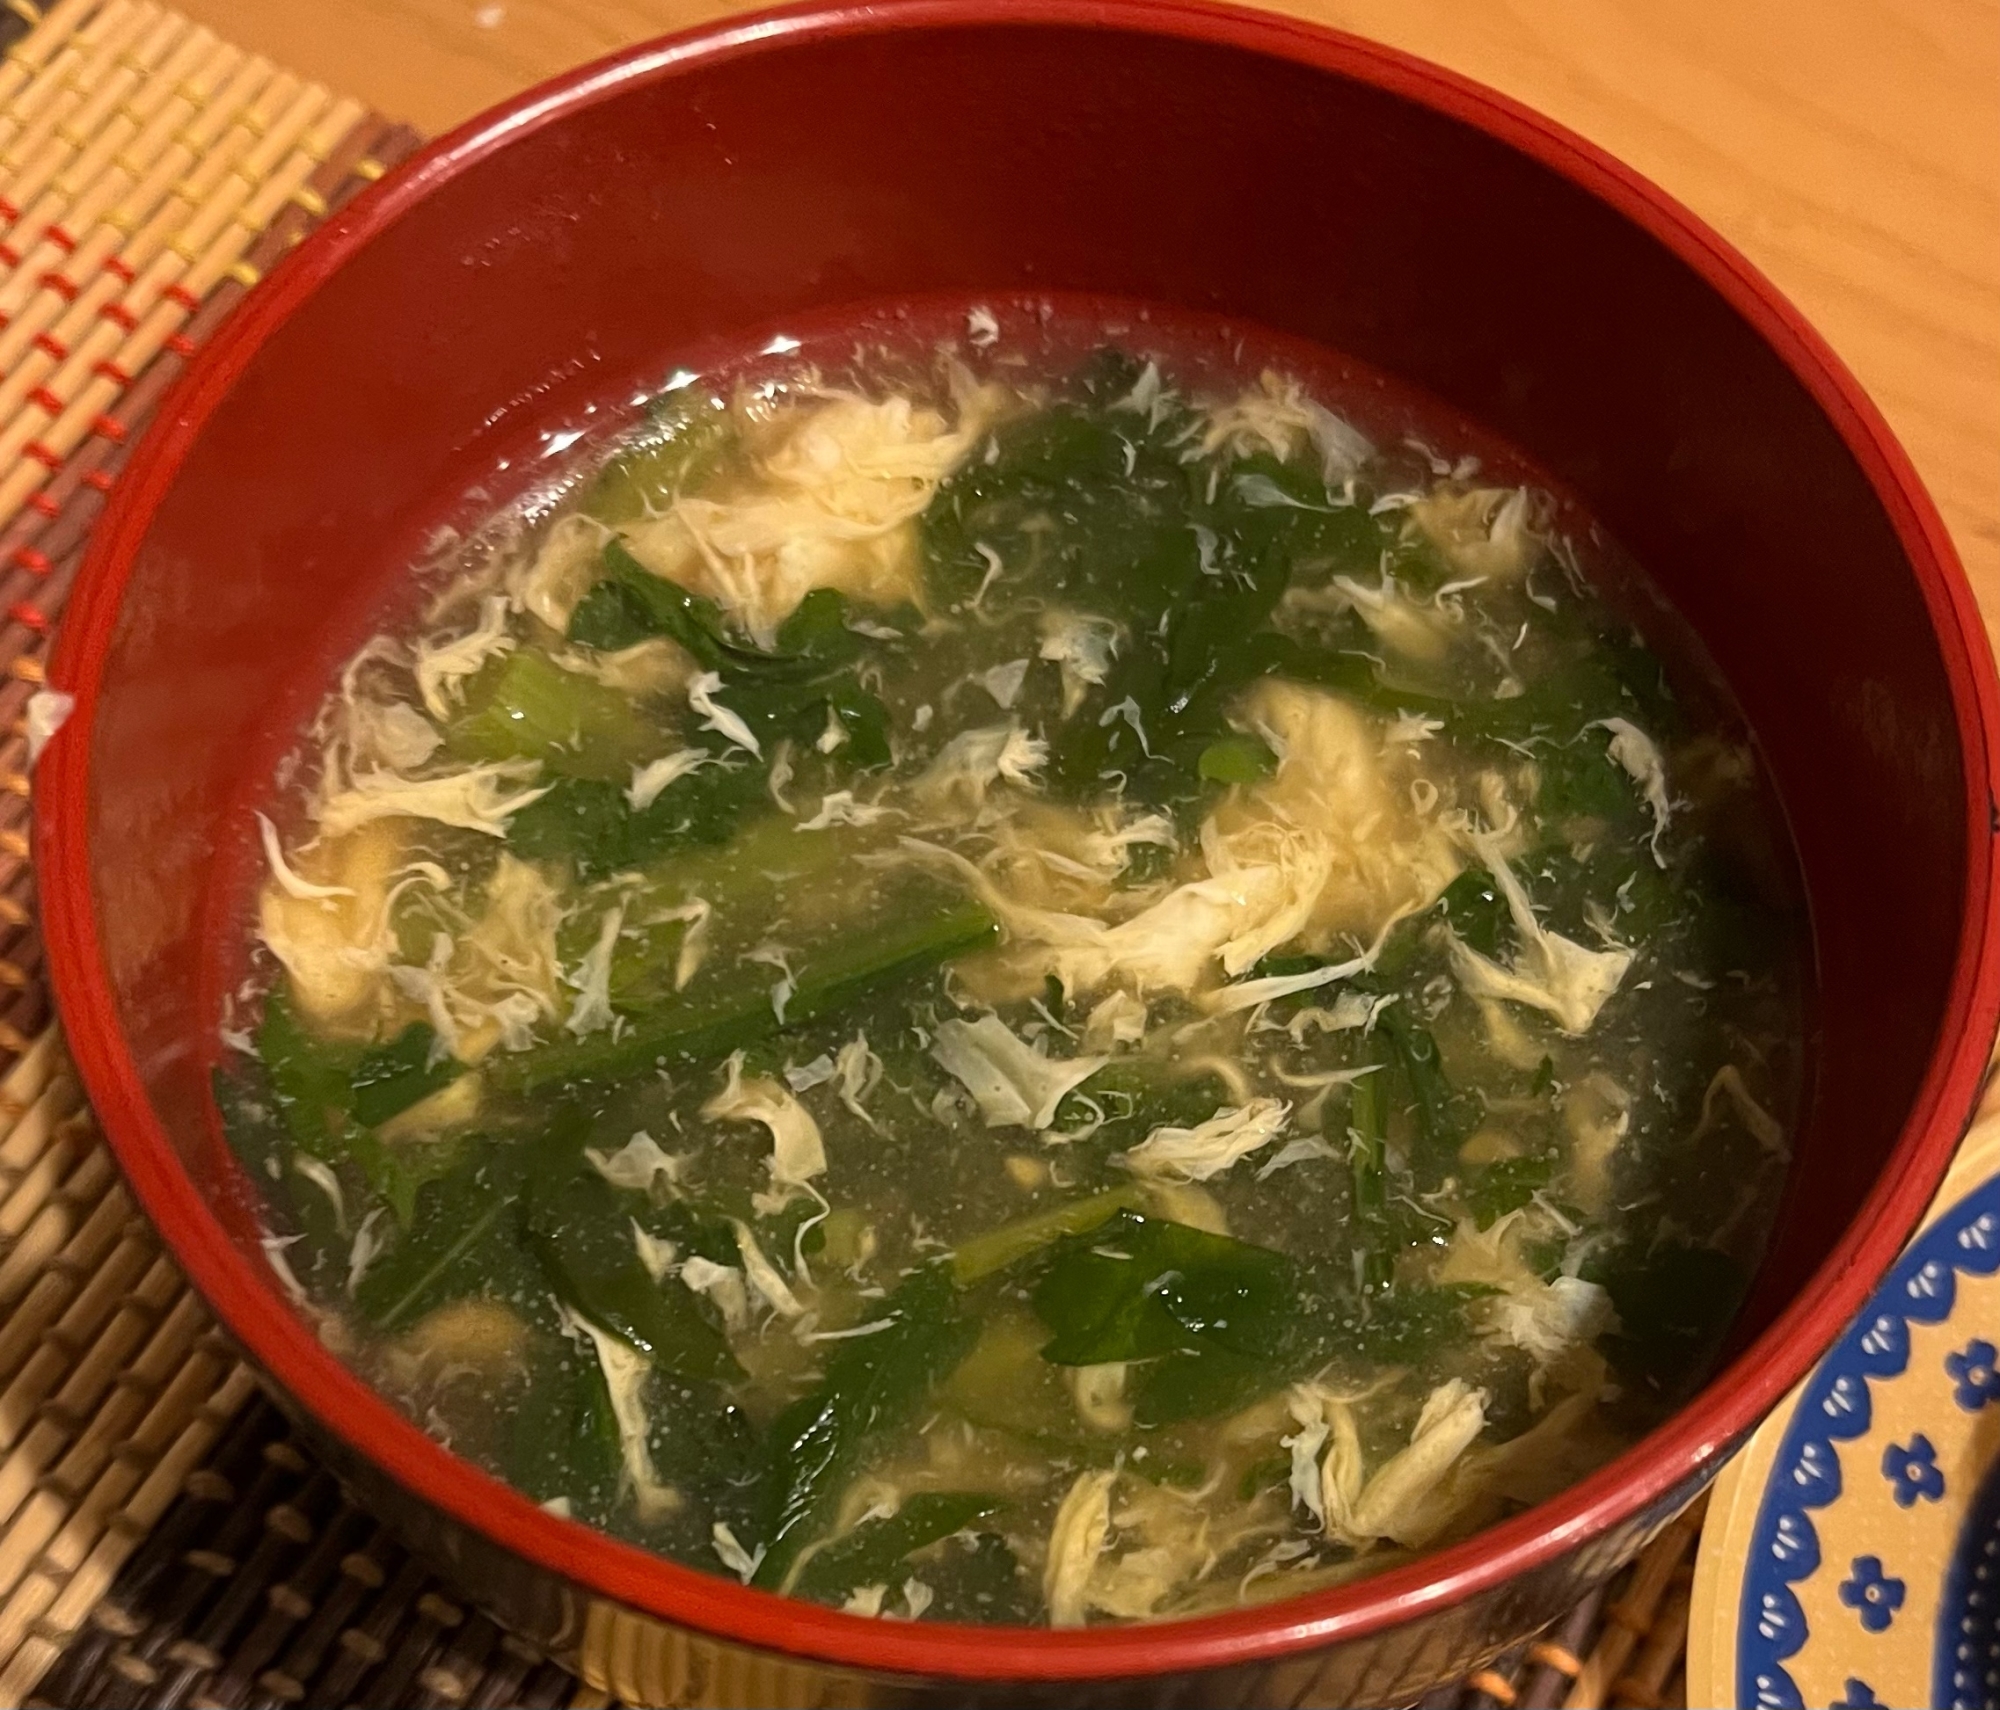 春菊と椎茸のかきたまスープ